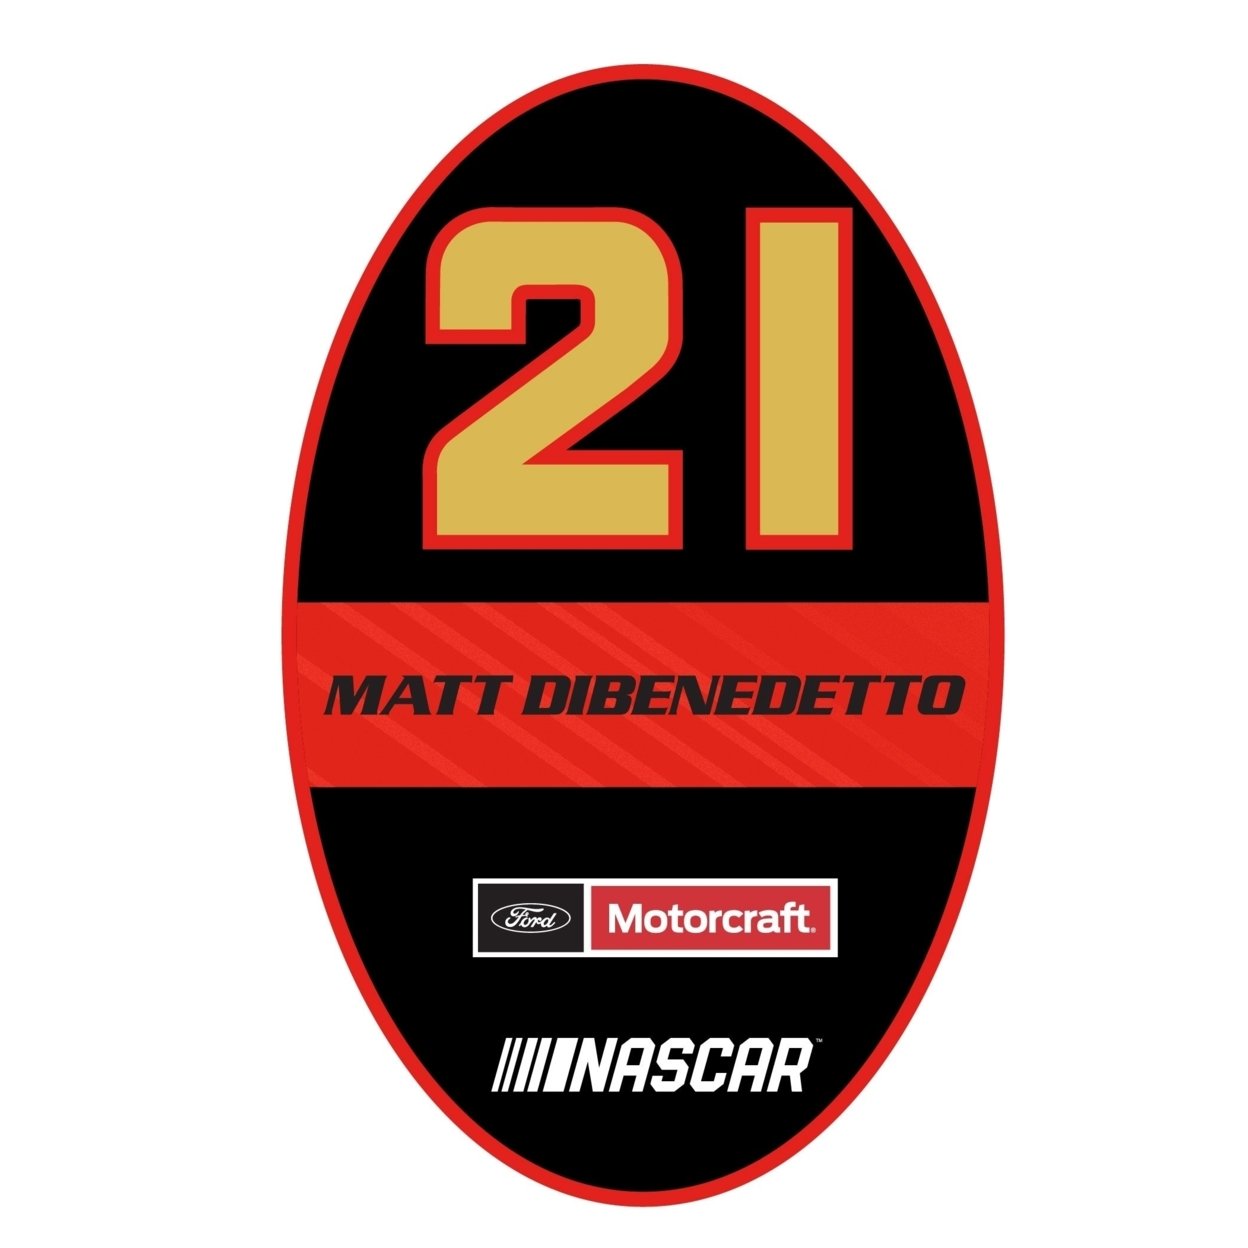 Matt DiBenedetto #21 NASCAR Oval Magnet New For 2020